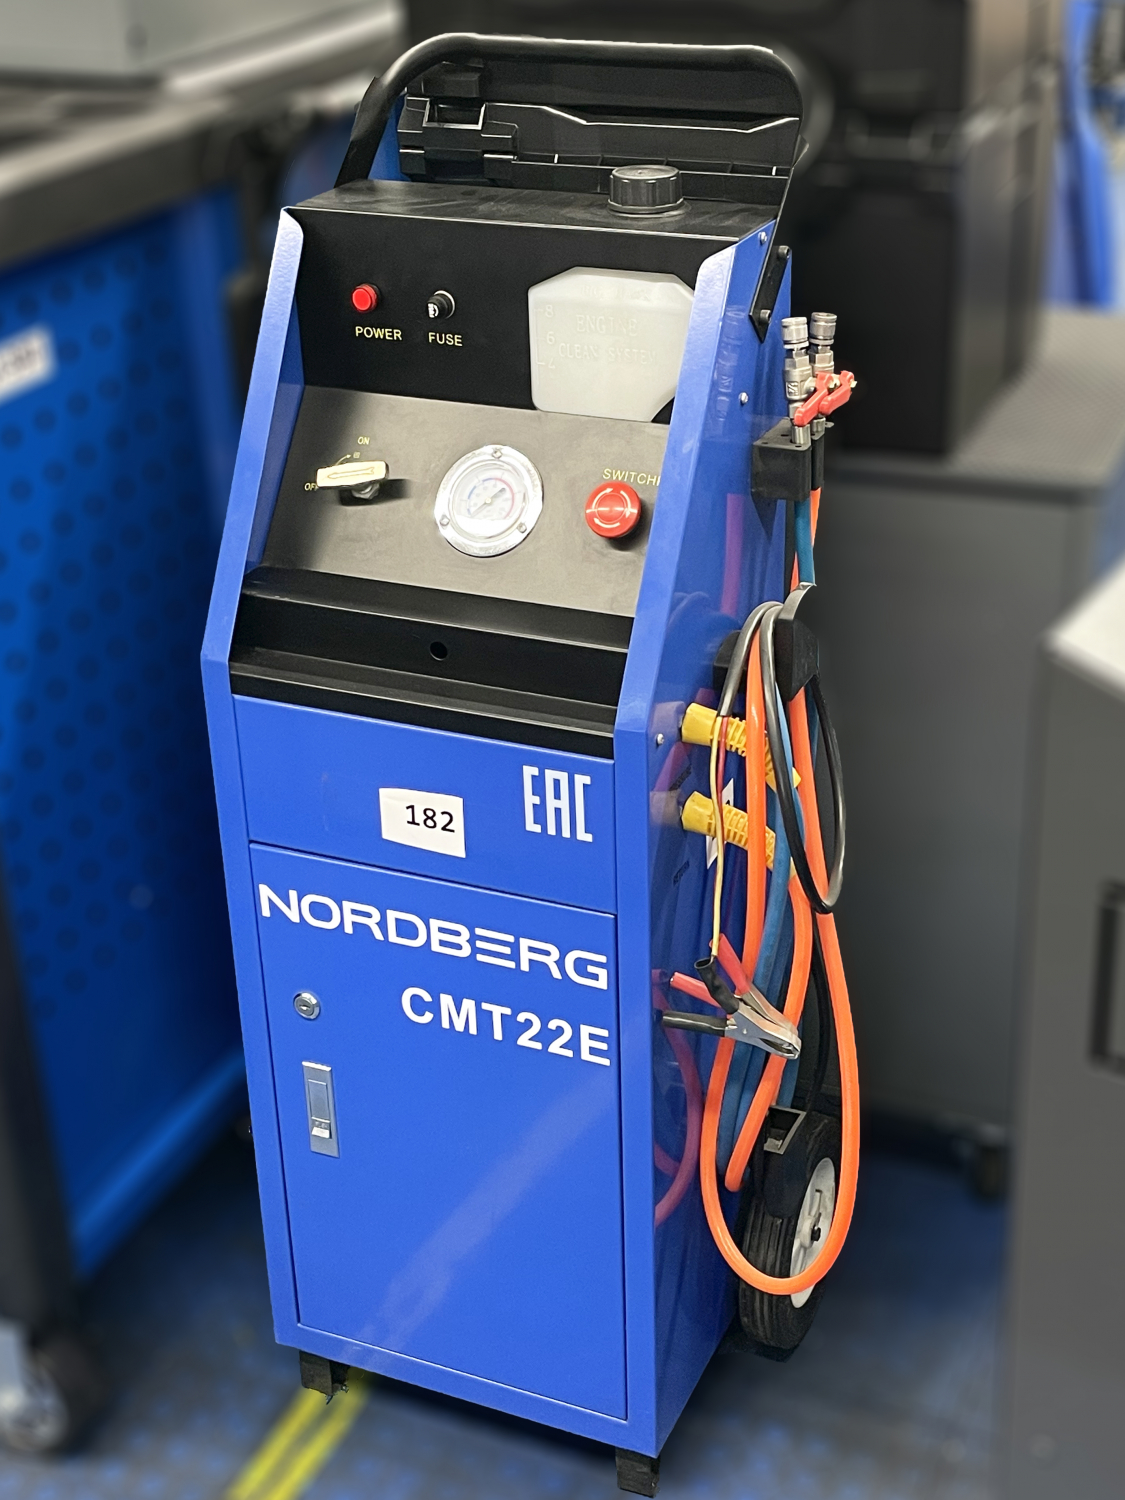 NORDBERG УСТАНОВКА CMT22E для промывки топливной системы RM 182